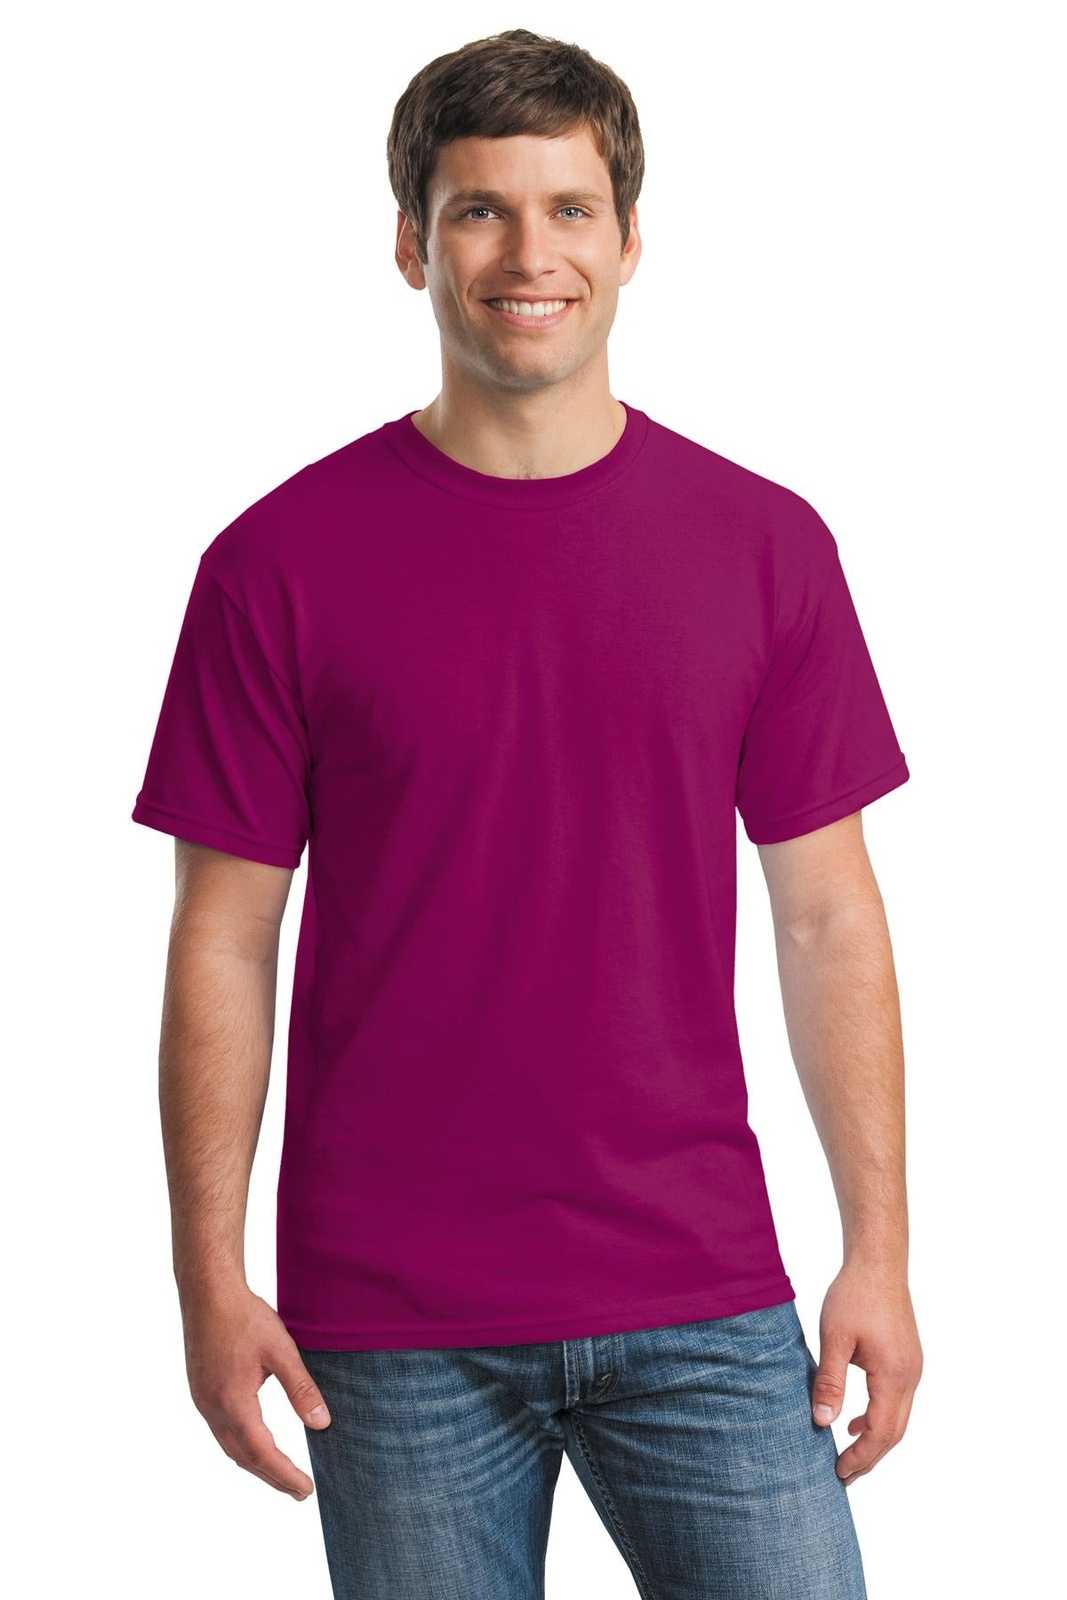 Gildan 5000 Heavy Cotton 100% Cotton T-Shirt - Berry - HIT a Double